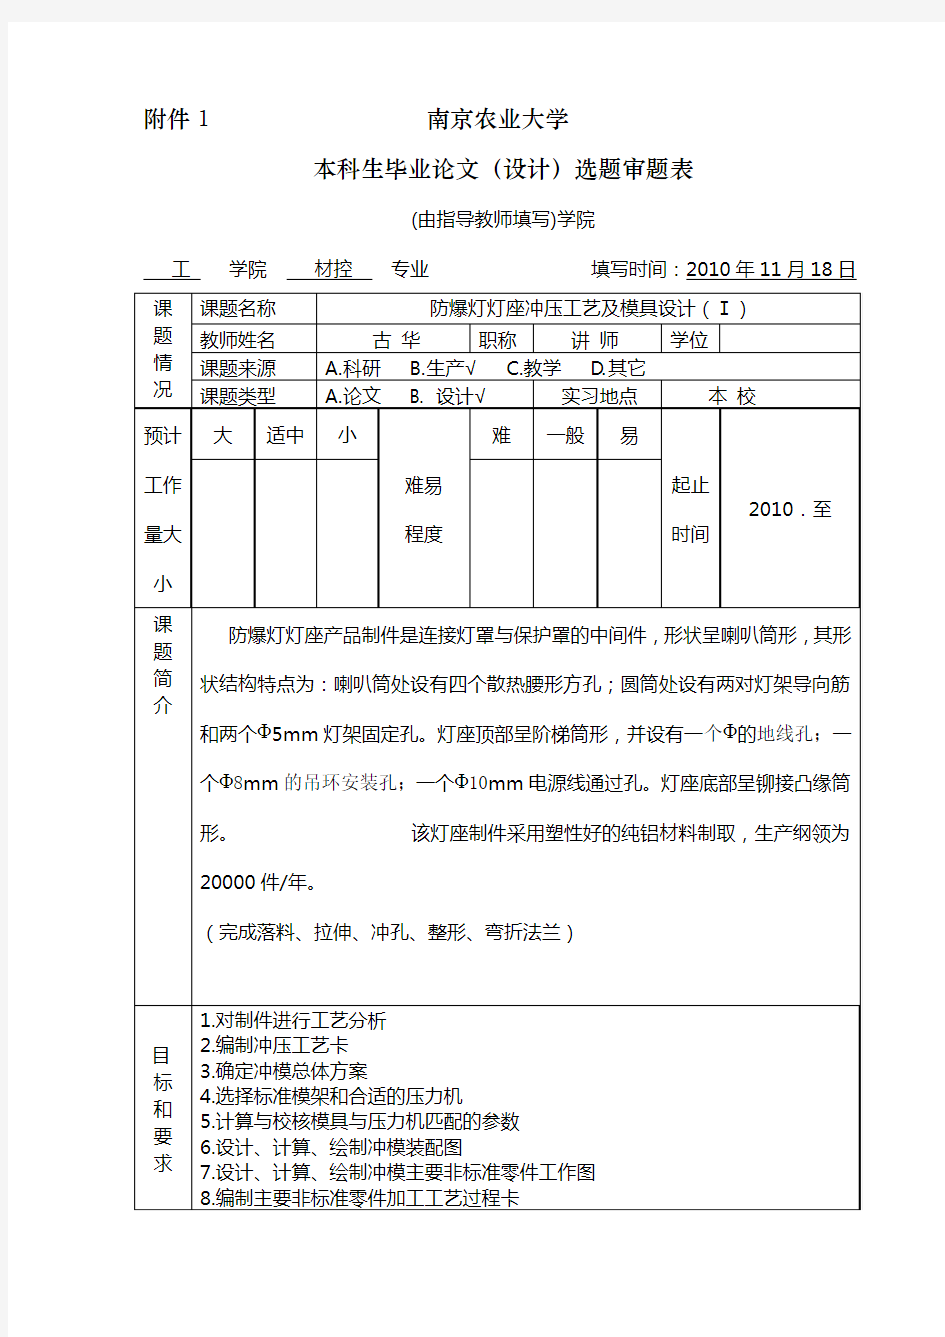 1南京农业大学本科生毕业论文(设计)选题审题表